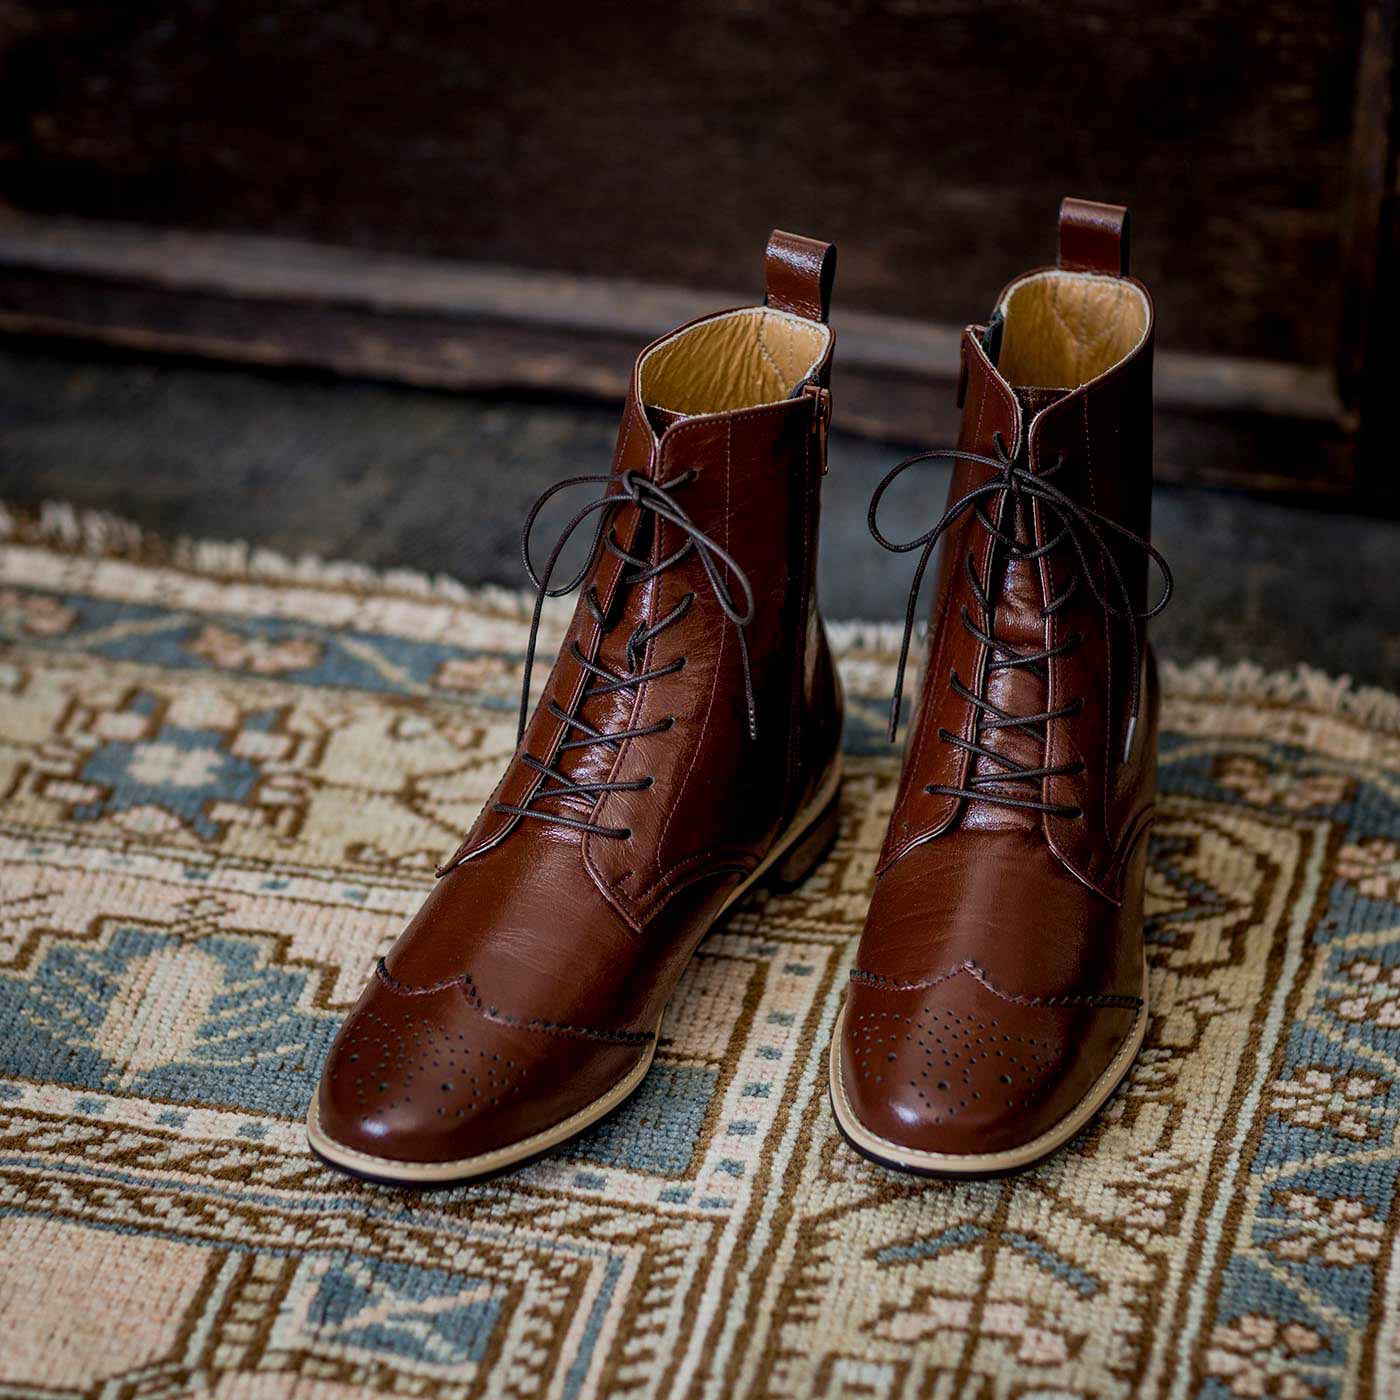 ＆Stories|長田の靴職人が作った　職人本革のウィングチップブーツ〈レッドブラウン〉|初代レッドブラウンを復刻。ノスタルジックでやさしい雰囲気。